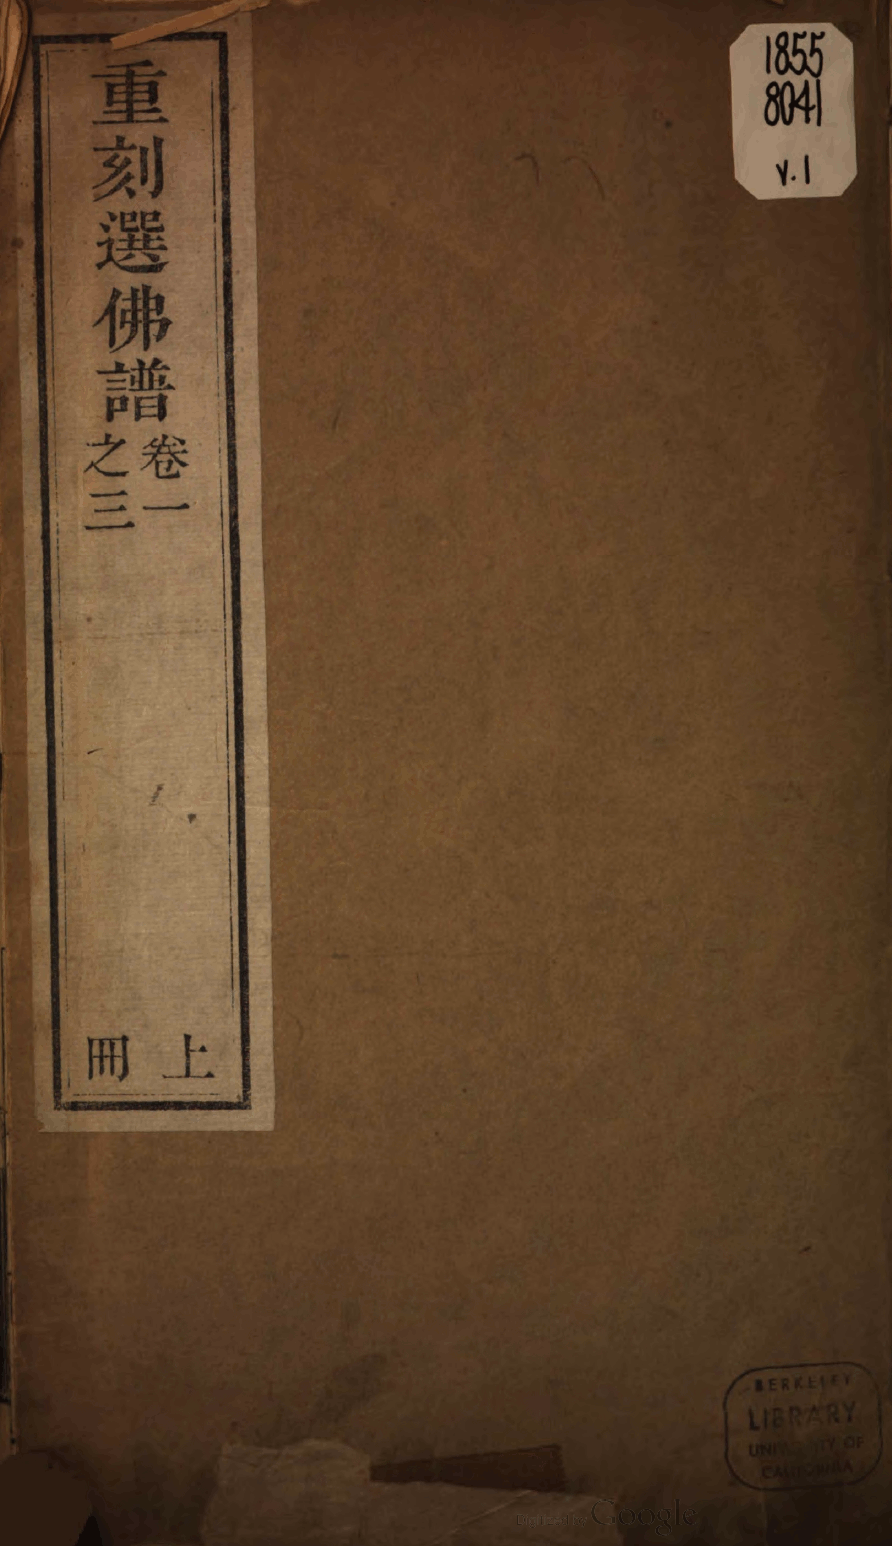 File:Xuanfo pu 1891.png